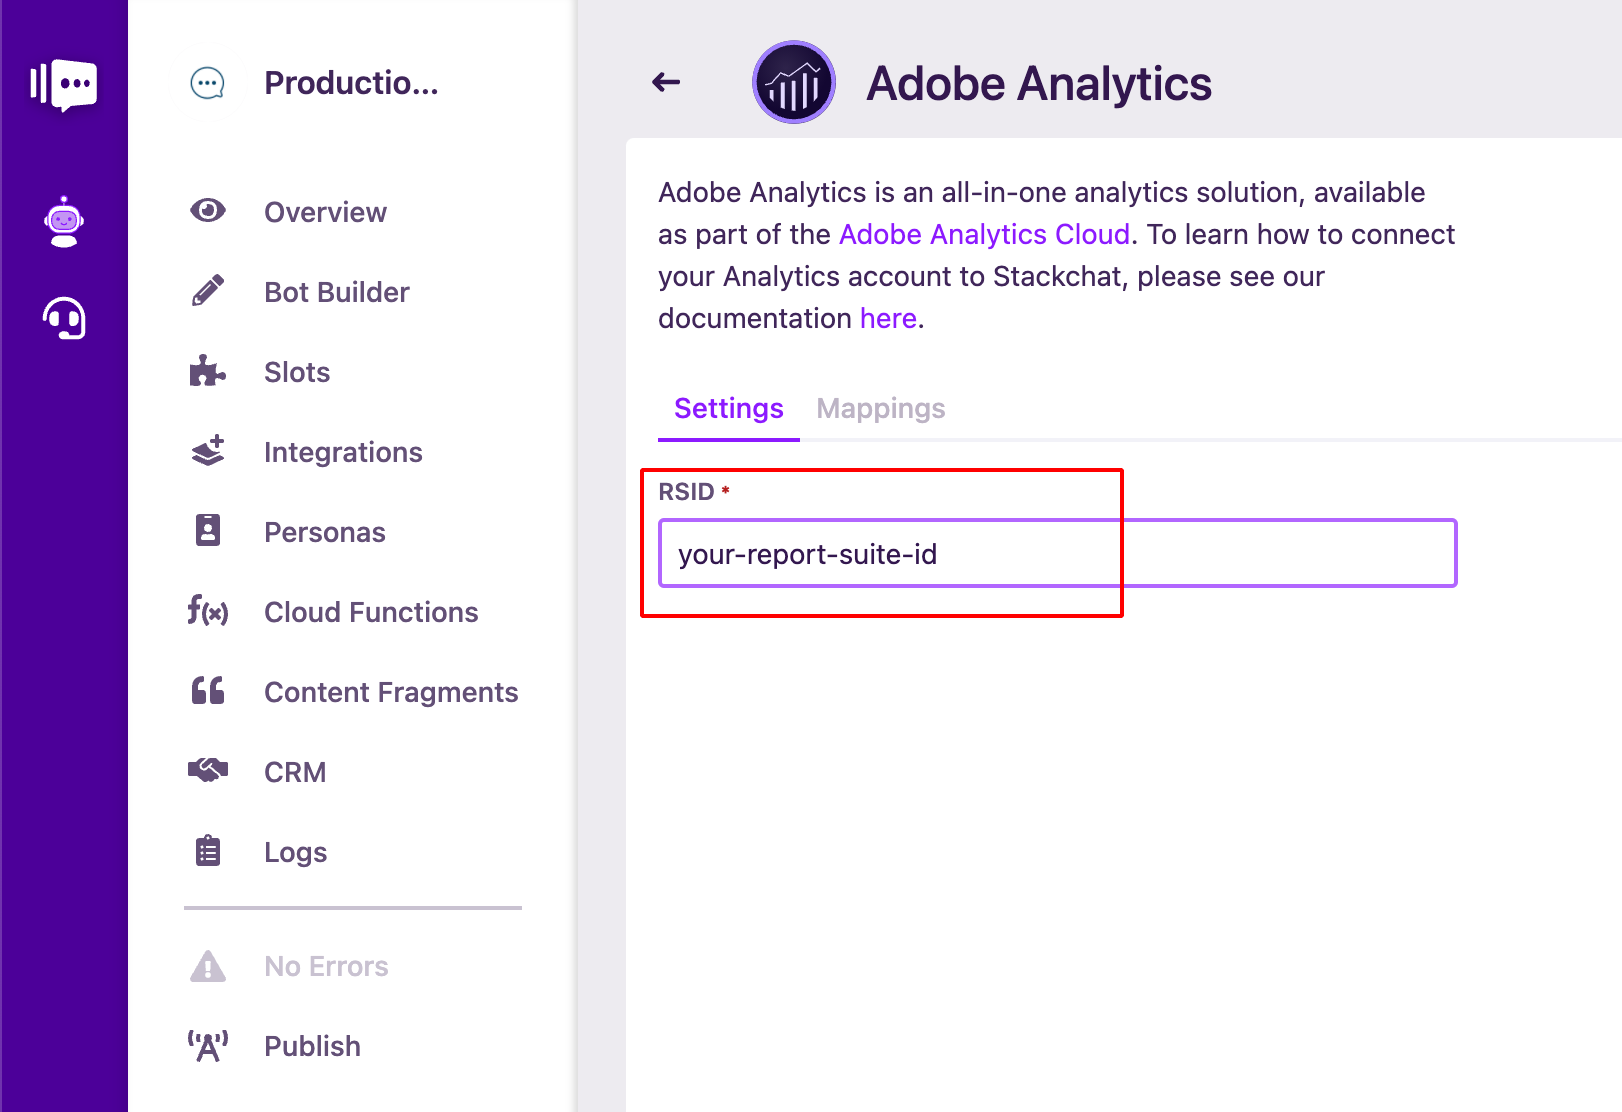 Adobe Analytics Company Settings